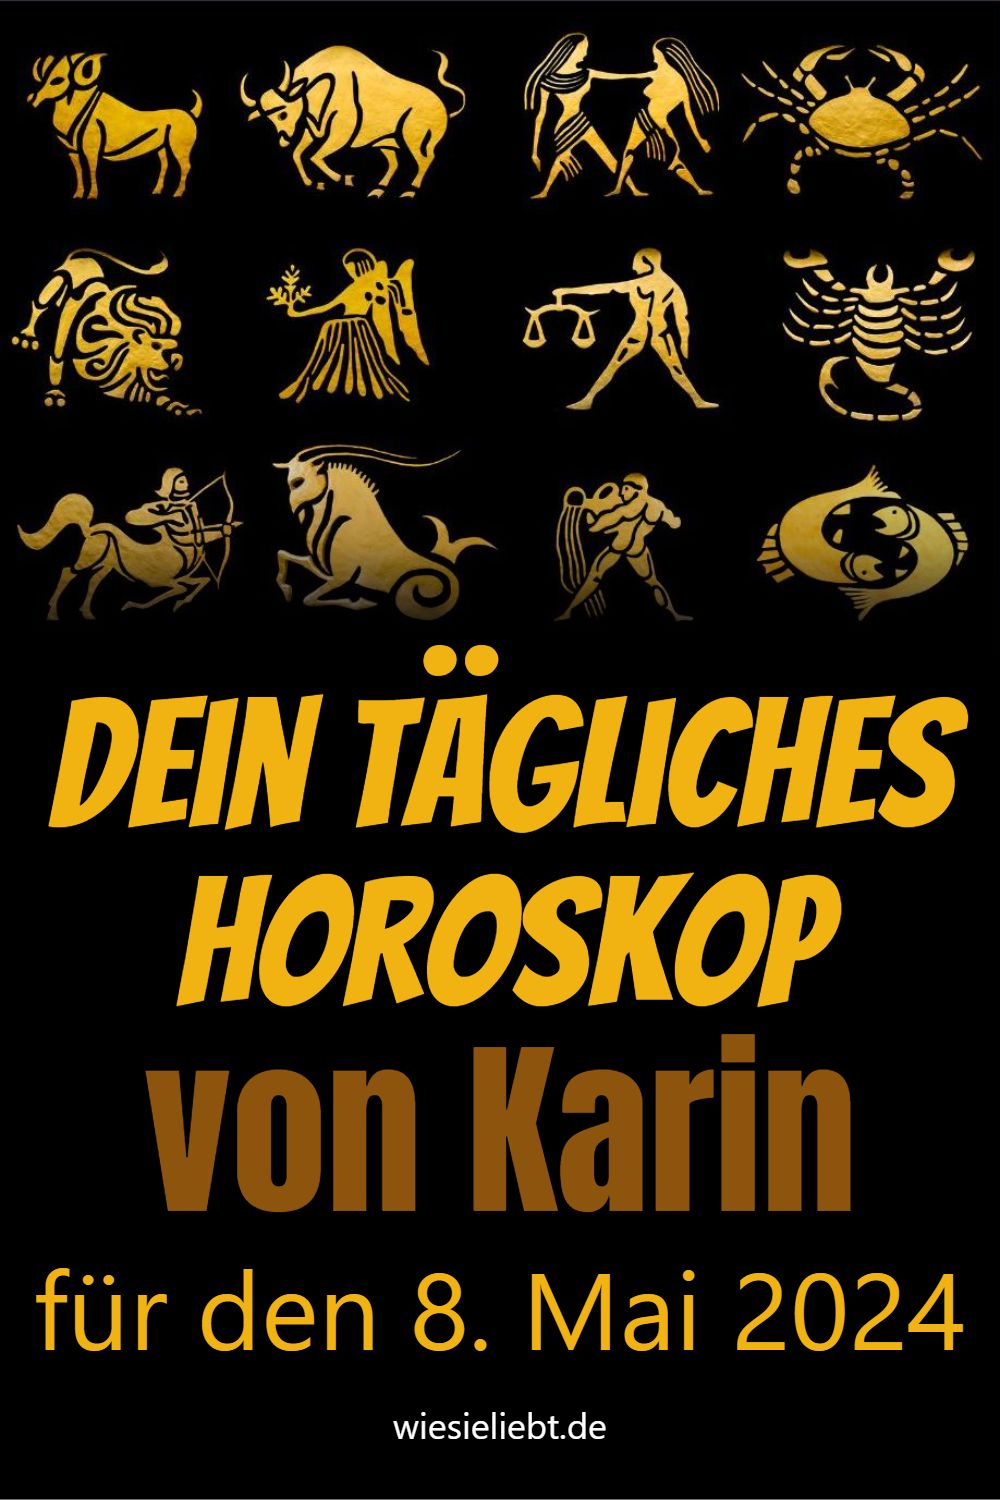 Dein tägliches Horoskop von Karin für den 8. Mai 2024